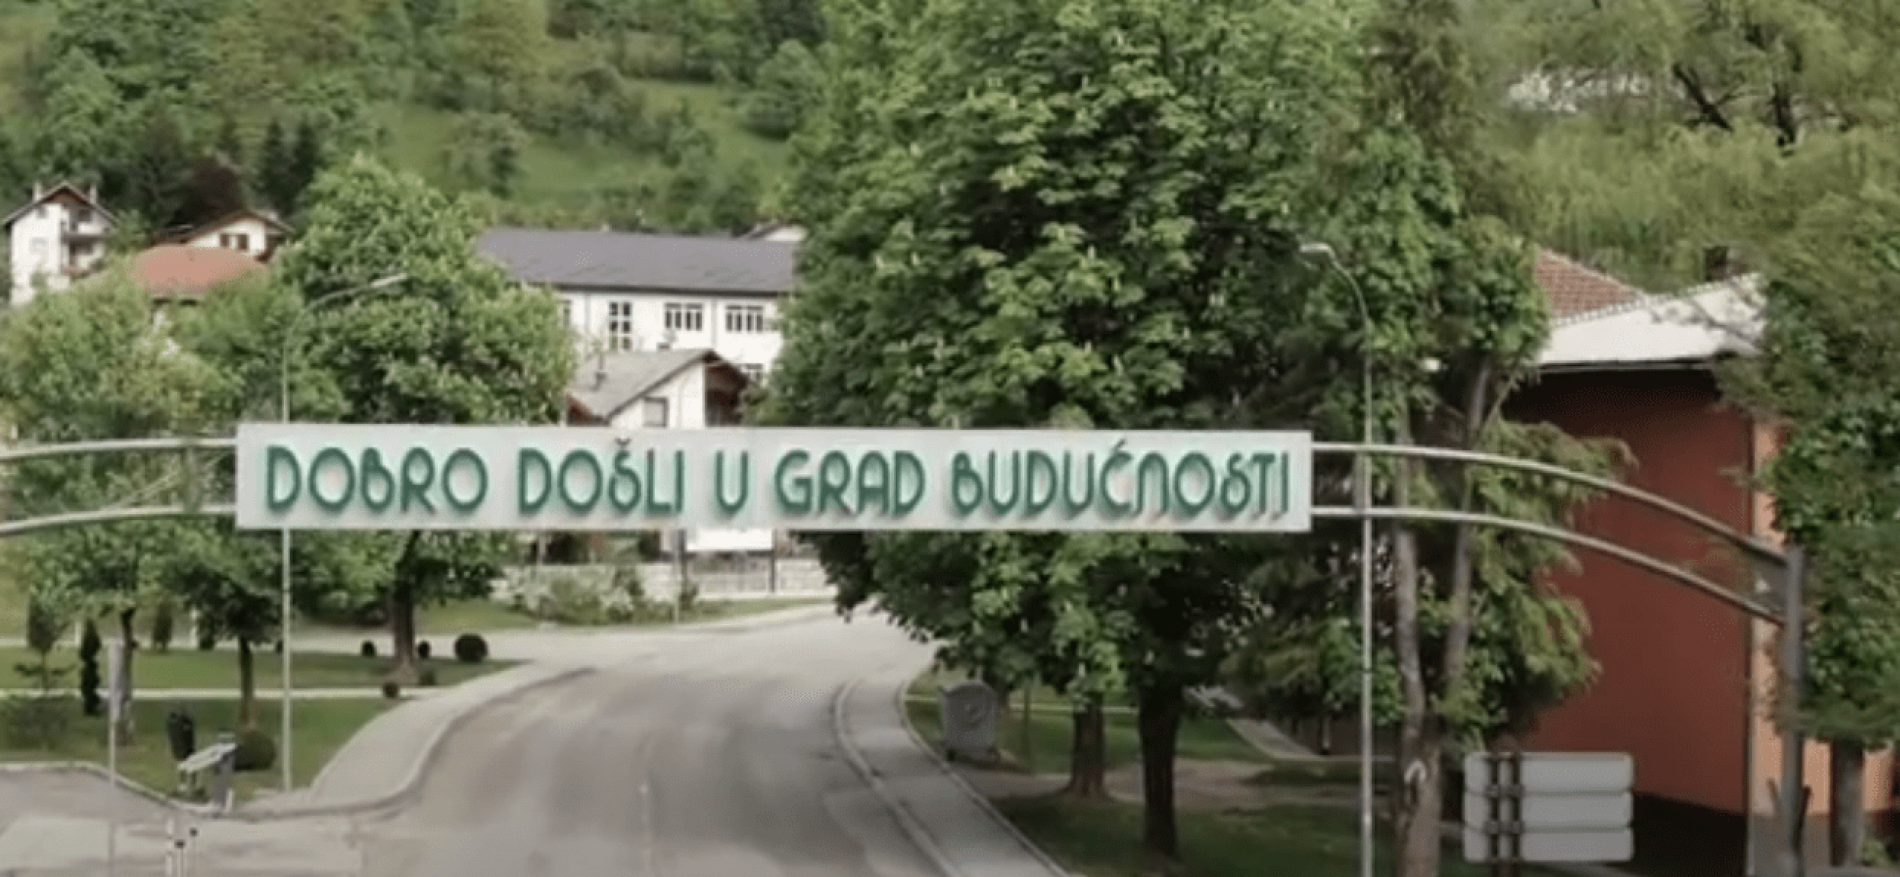 Dokumentarni film o olovskoj ratnoj bolnici! “Pod zemljom”: Dostojanstveno sjećanje